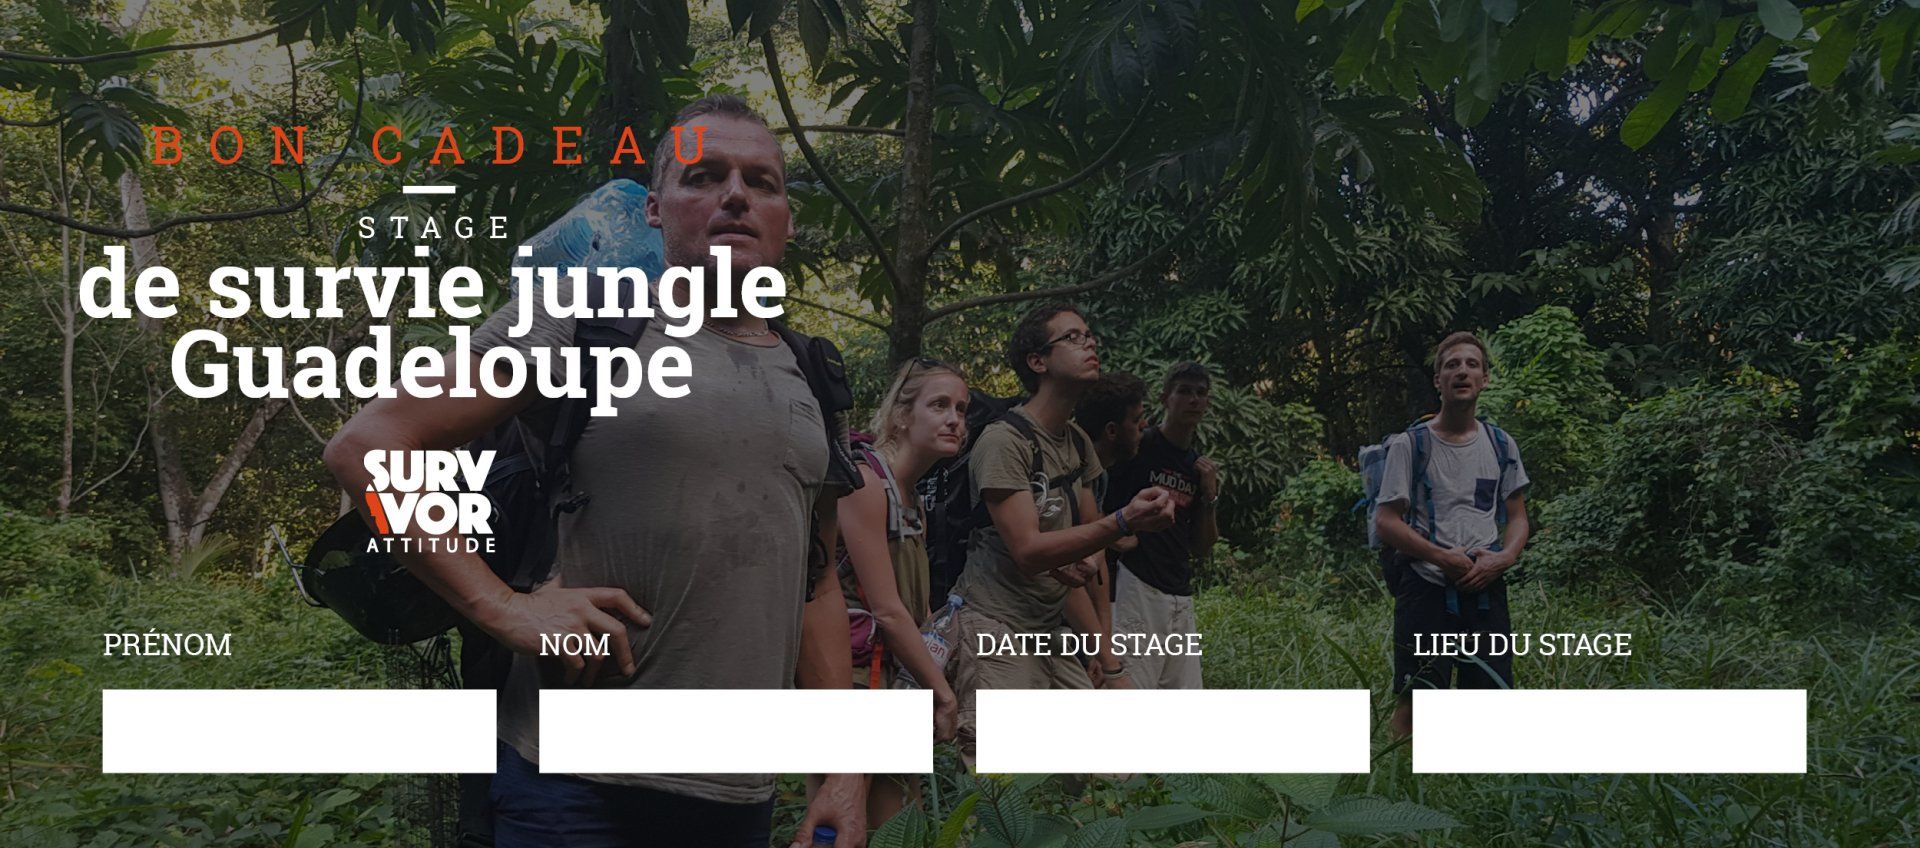 Offrir un bon cadeau stage trek survie jungle Guadeloupe Survivor Attitude